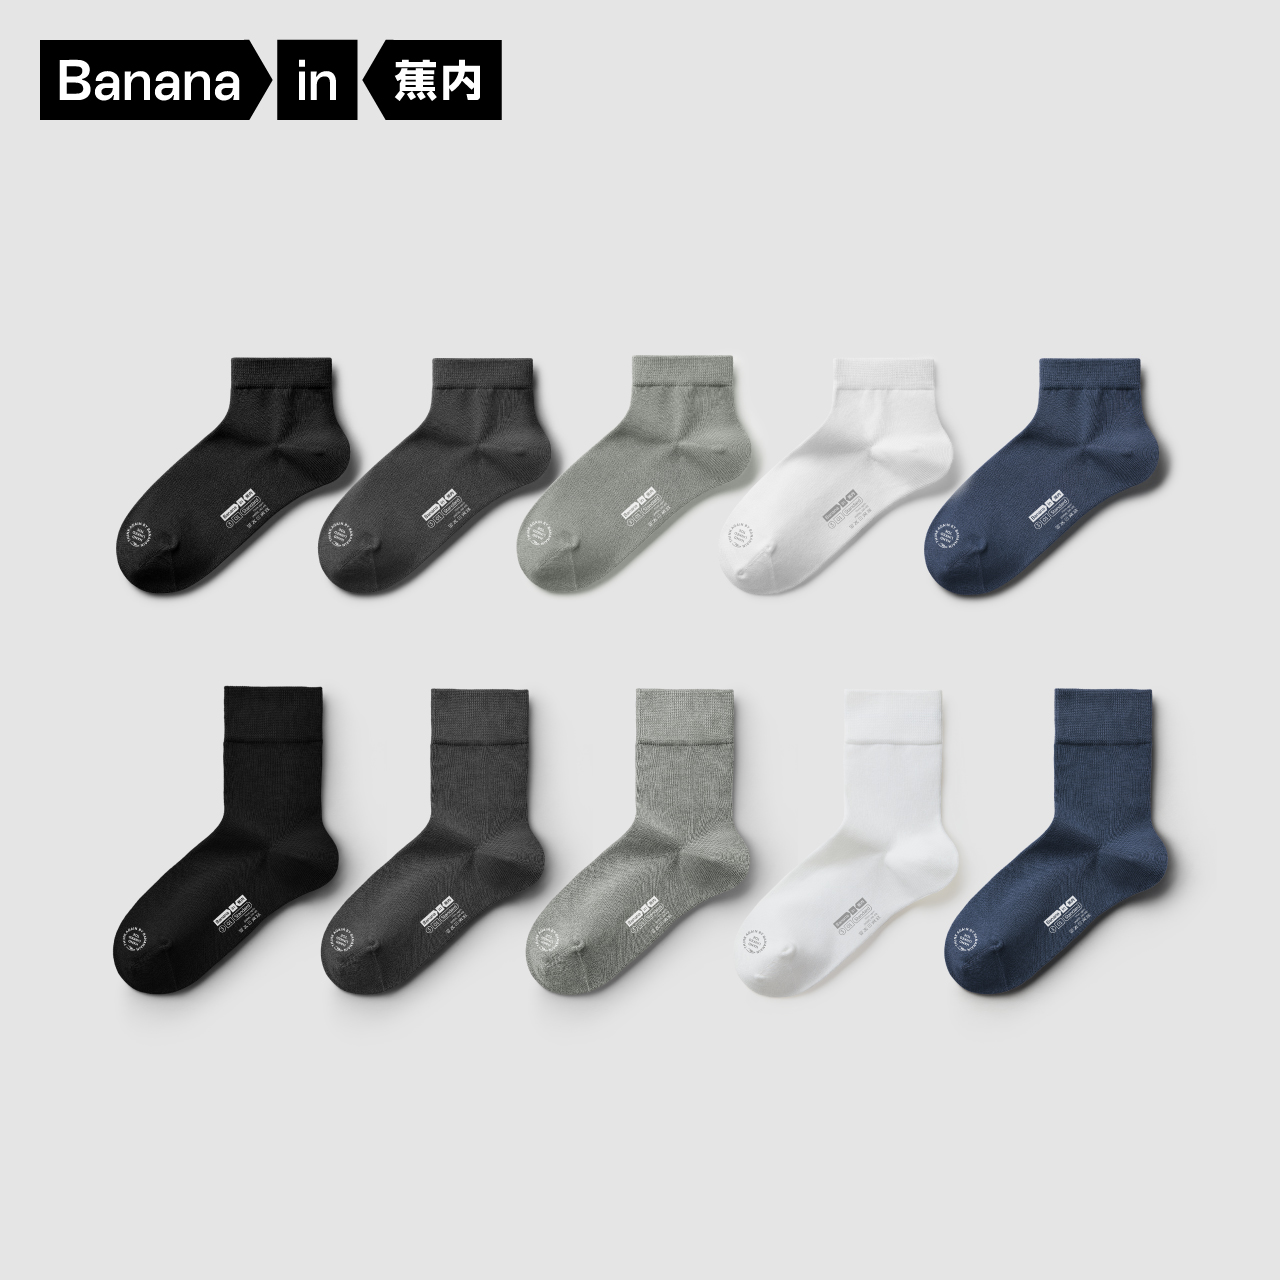 Bananain 蕉内 男士运动短袜 5双装 45.1元